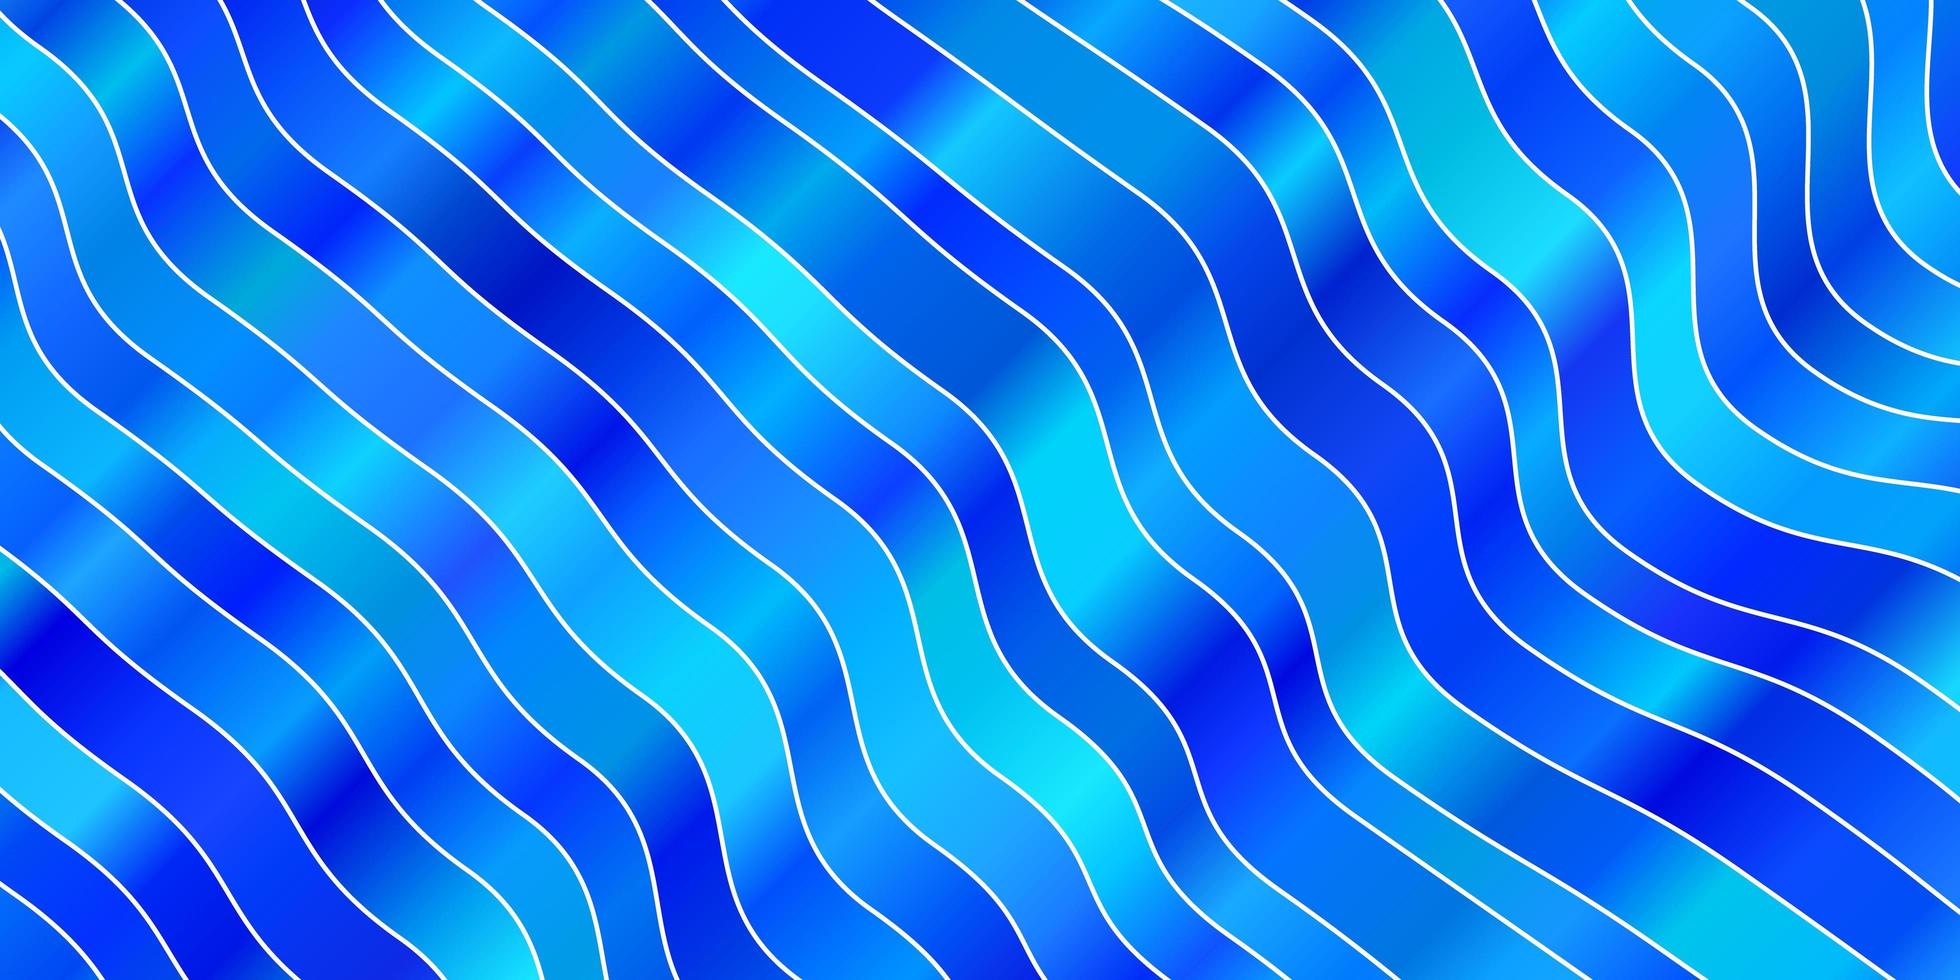 layout de vetor de azul claro com curvas.